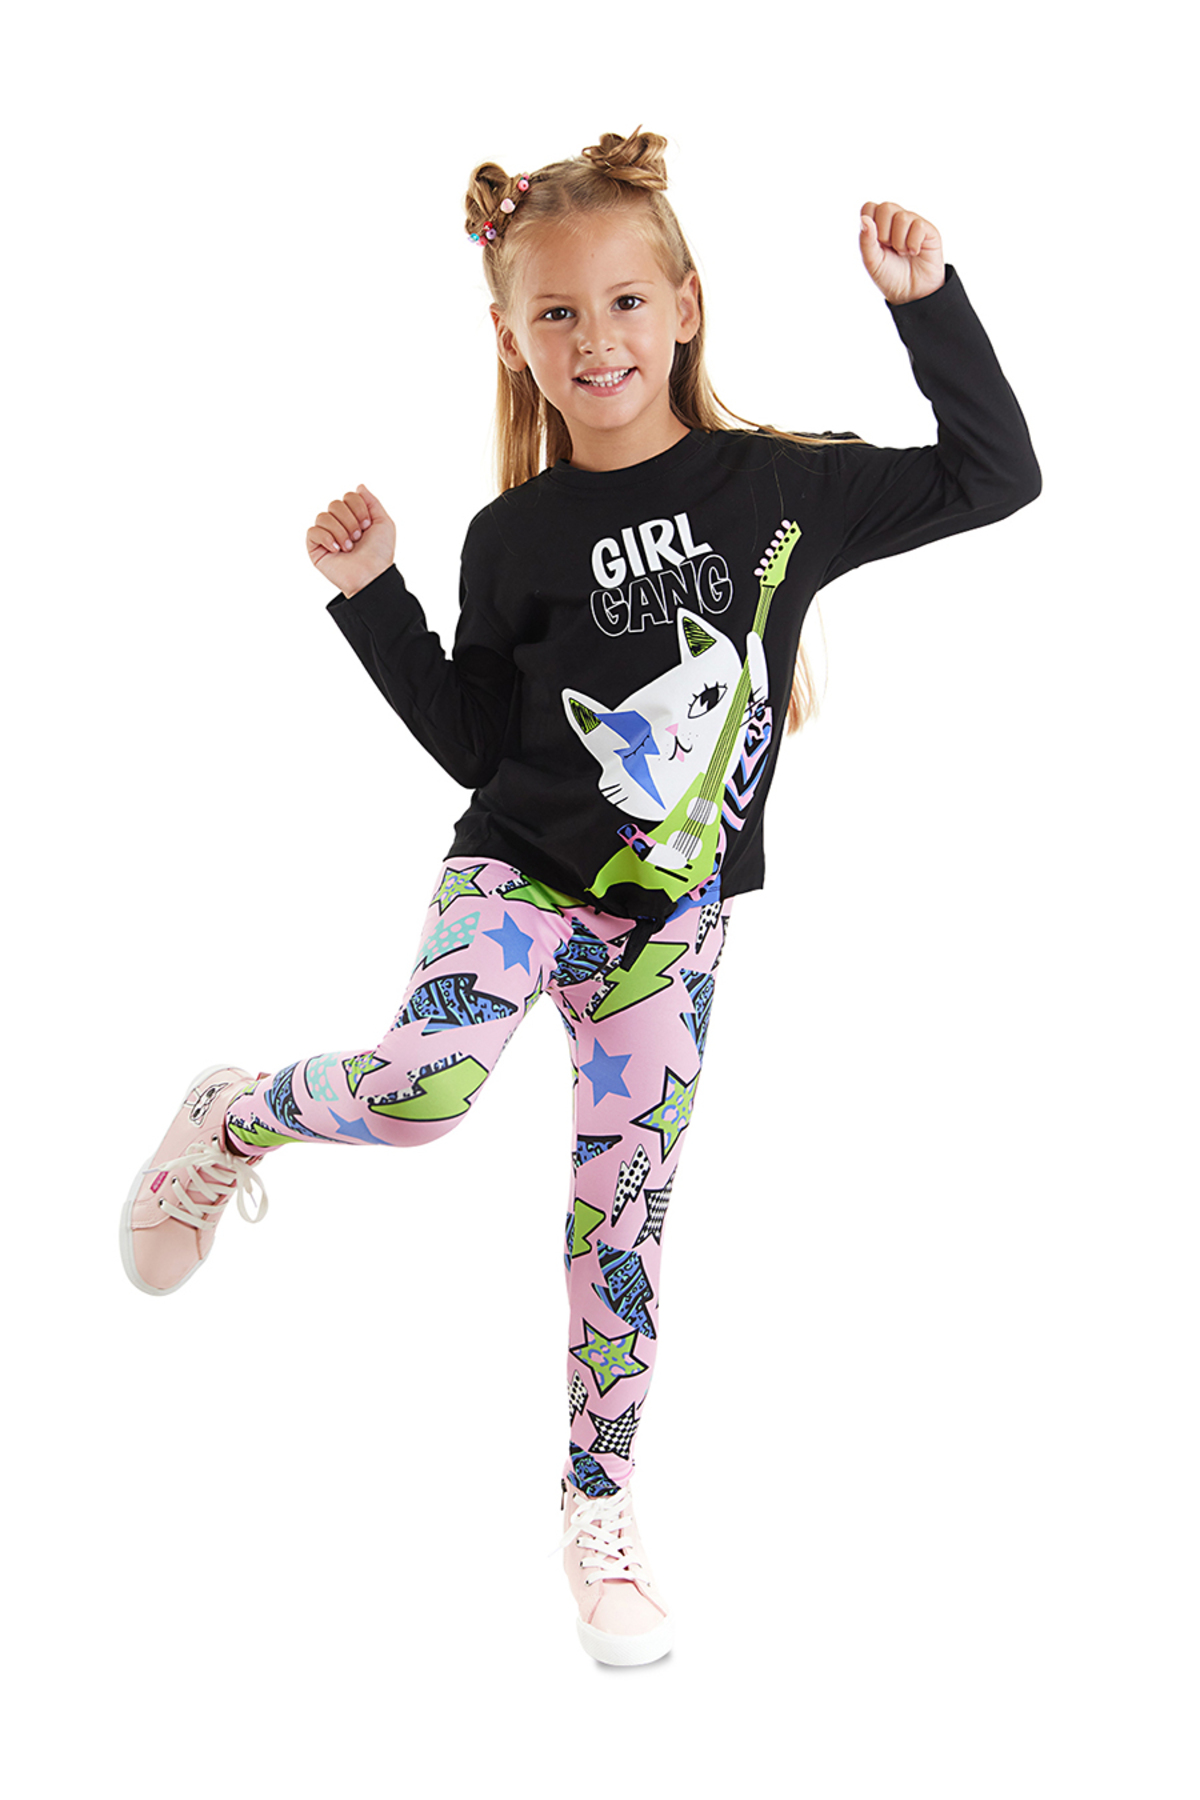 Mushi Girl Gang Girl's T-shirt Tights Set